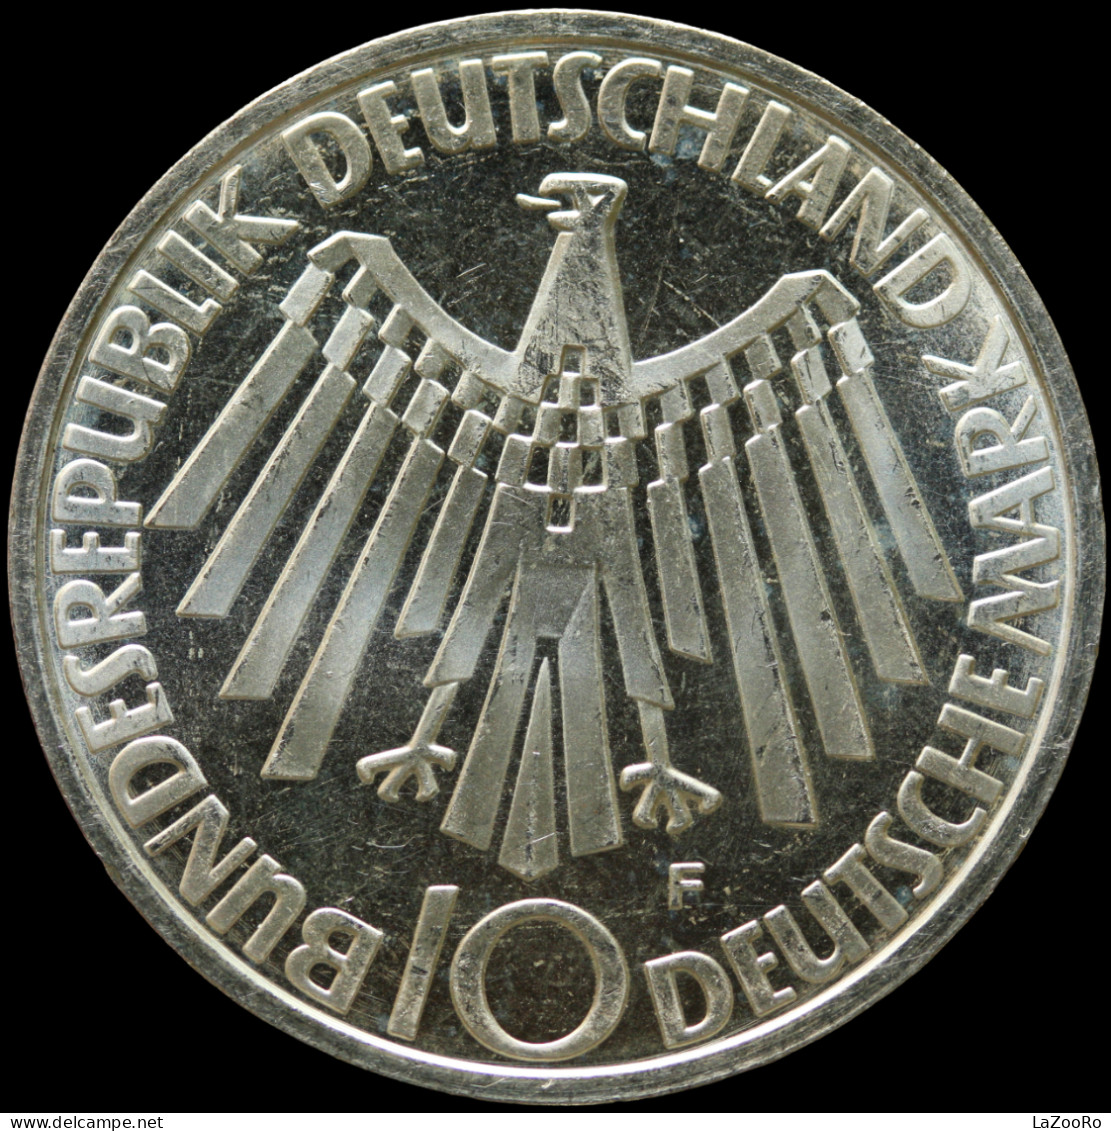 LaZooRo: Germany 10 Mark 1972 F PROOF Olympics - Silver - Gedenkmünzen